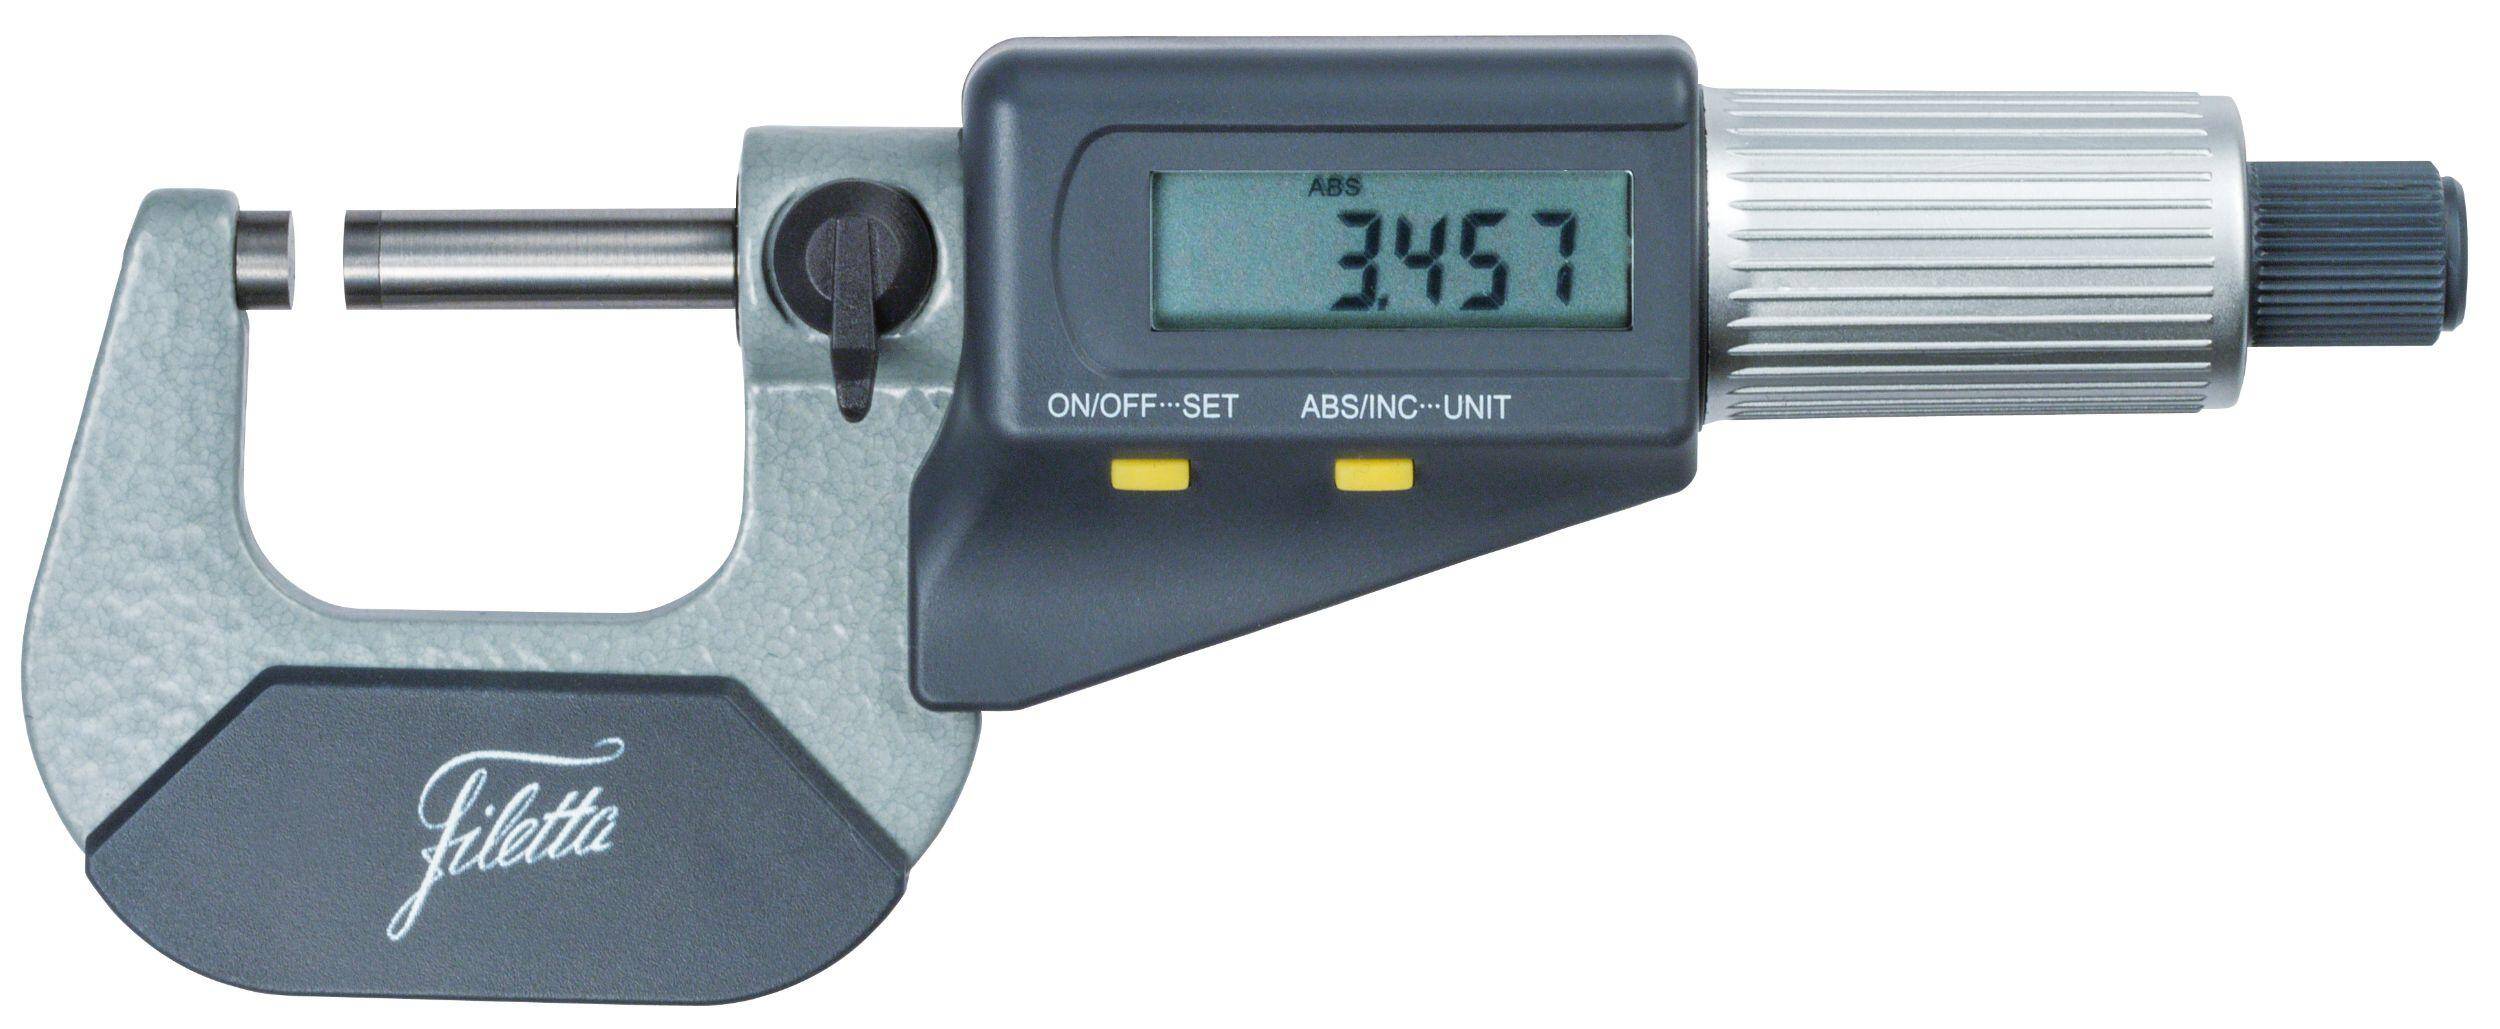 SCHUT mikrometr elektroniczny 0-25/0.001mm + świadectwo wzorcowania 908.758 WZORC (Zdjęcie 3)